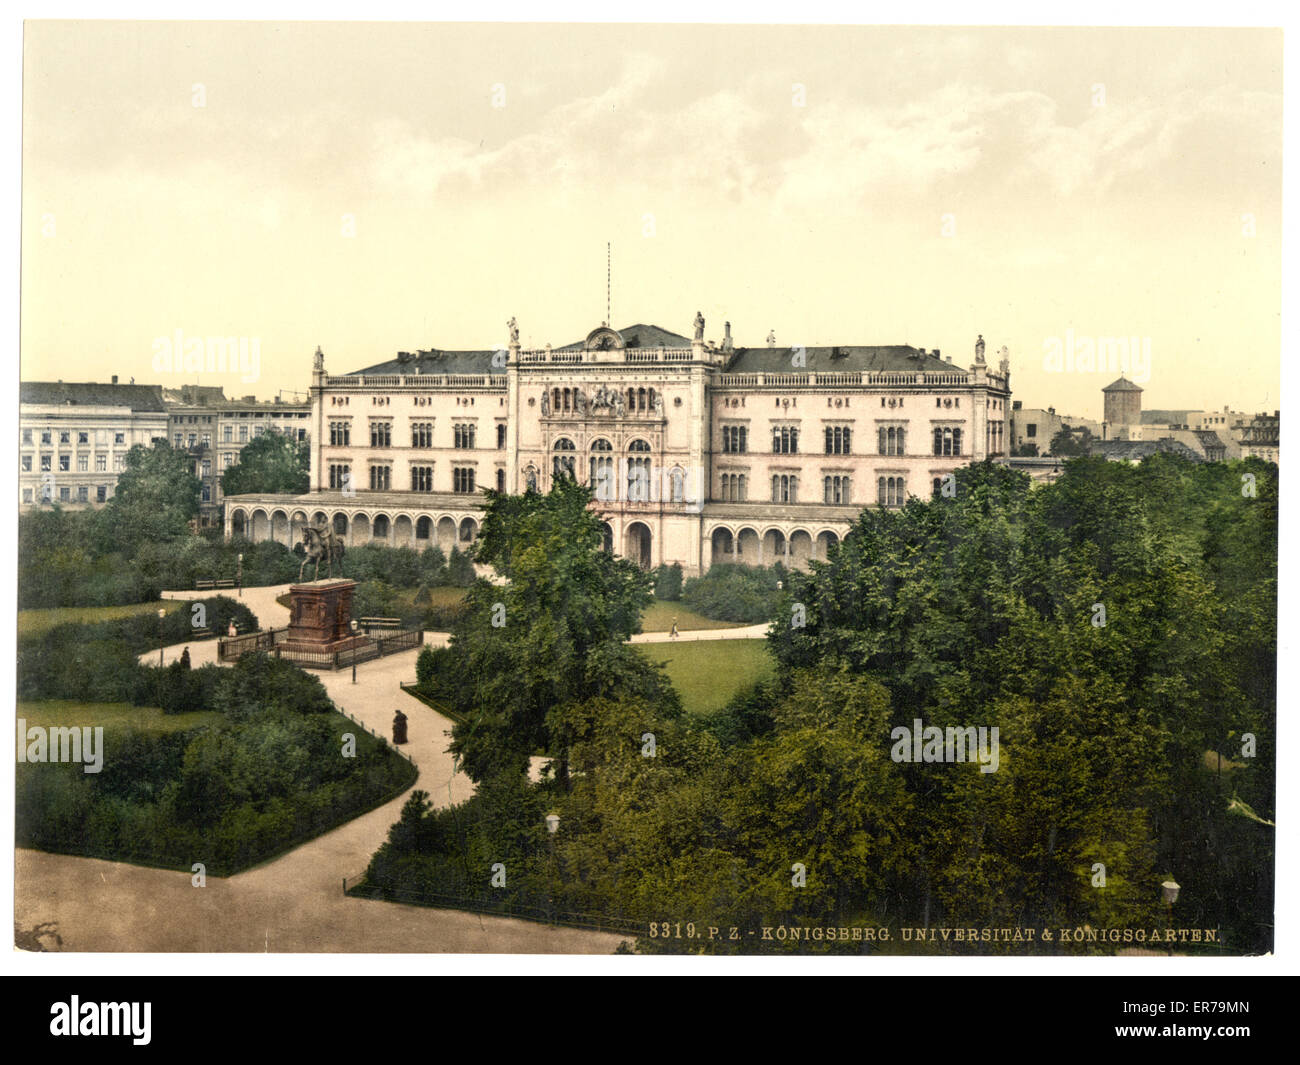 Universität und königlicher Garten, Königsberg, Ostpreußen, Germa Stockfoto